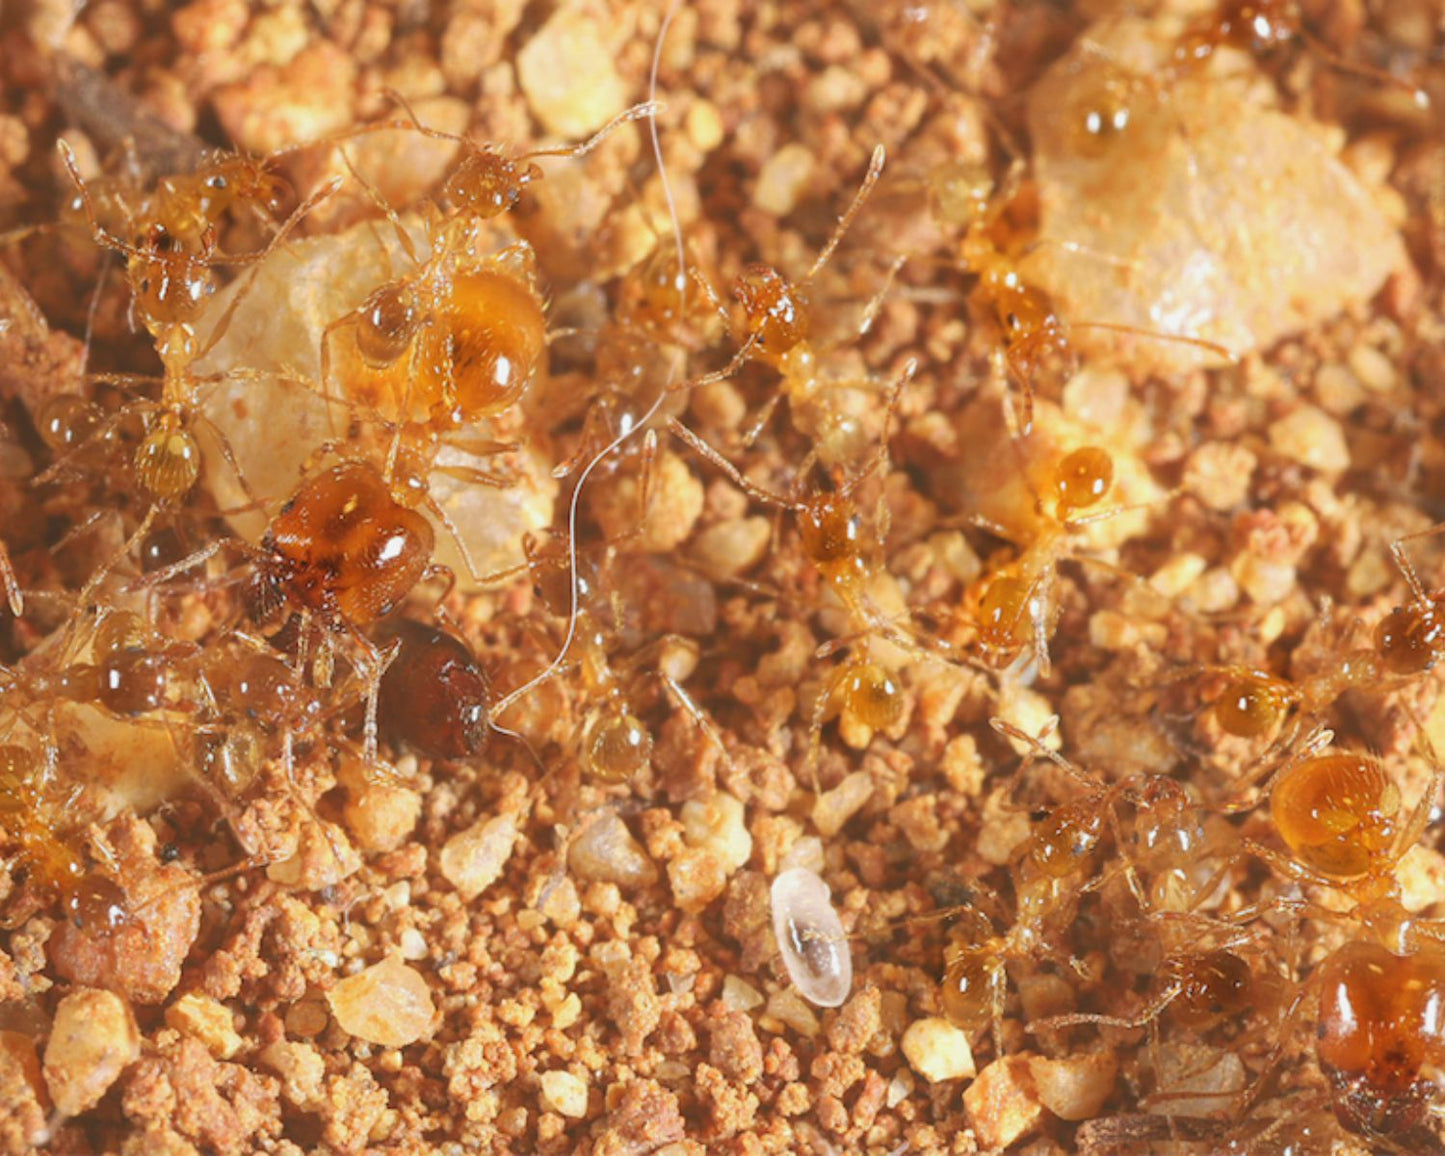 Hormigas - Pheidole pallidula